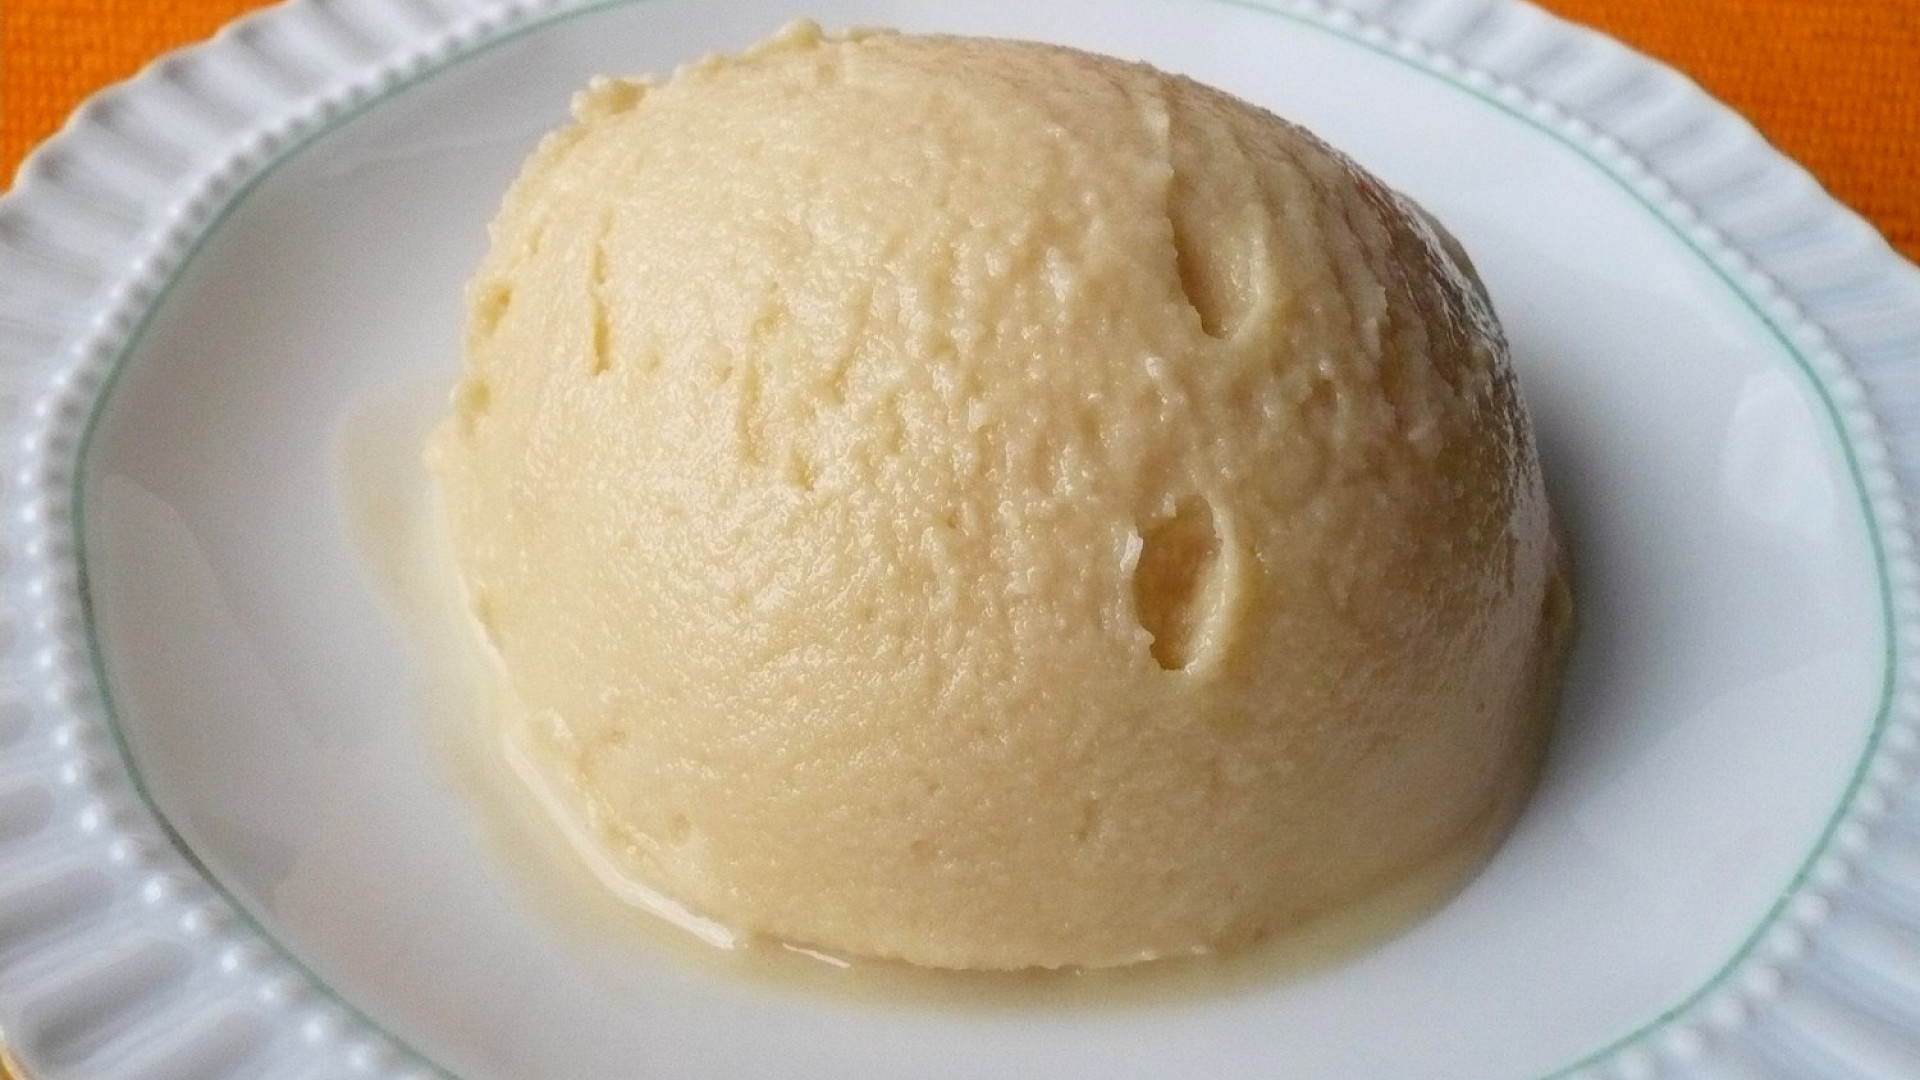 Mléčná karamelová zmrzlina